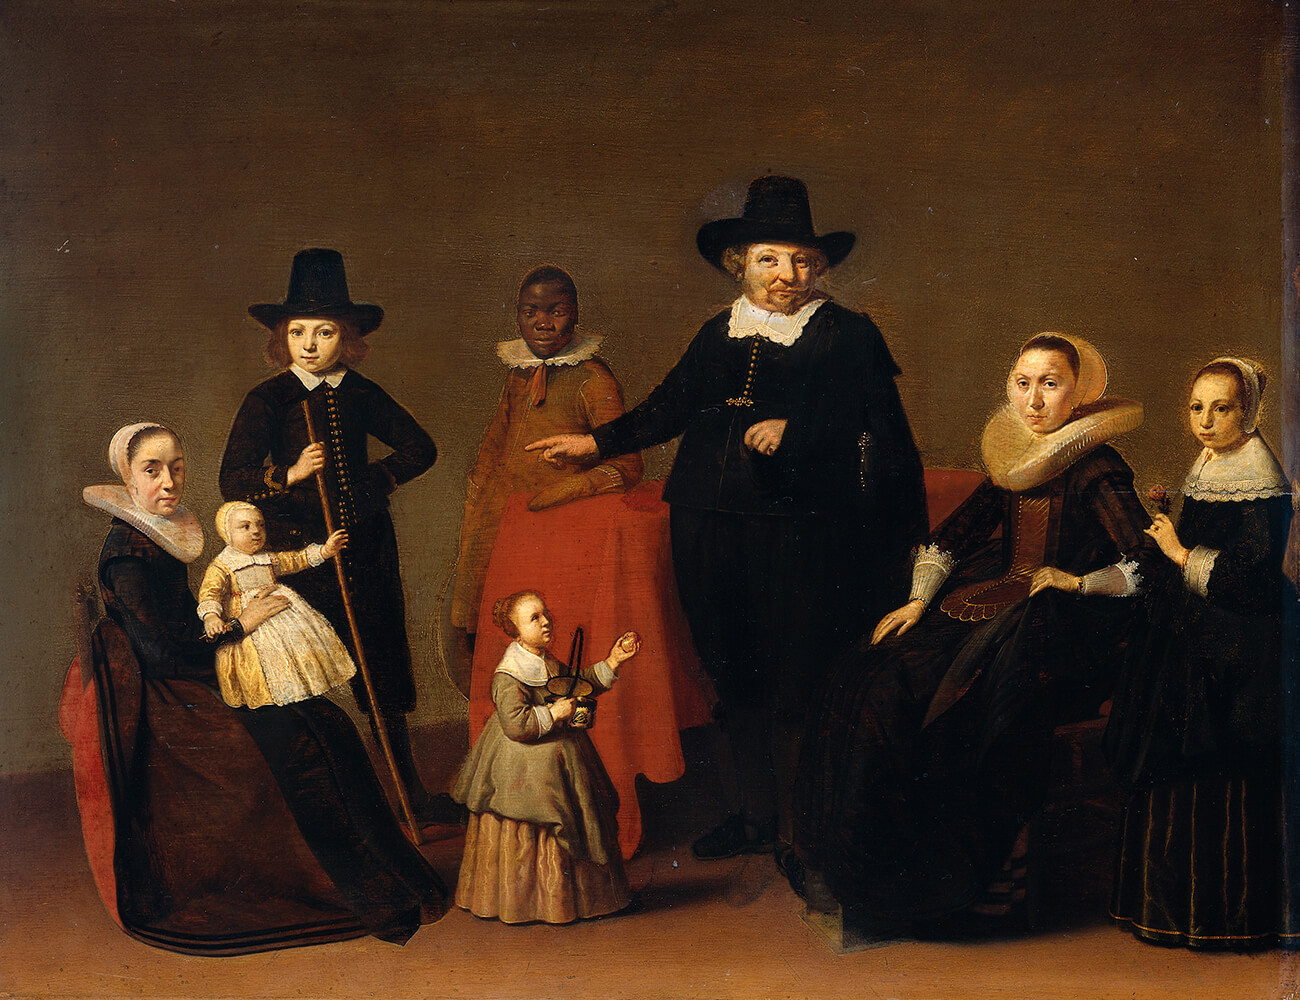 Willem Cornelisz. Duyster, Familiegroep met een zwarte man, SK-A-203 (ca. 1631). Bron: Rijksmuseum Amsterdam